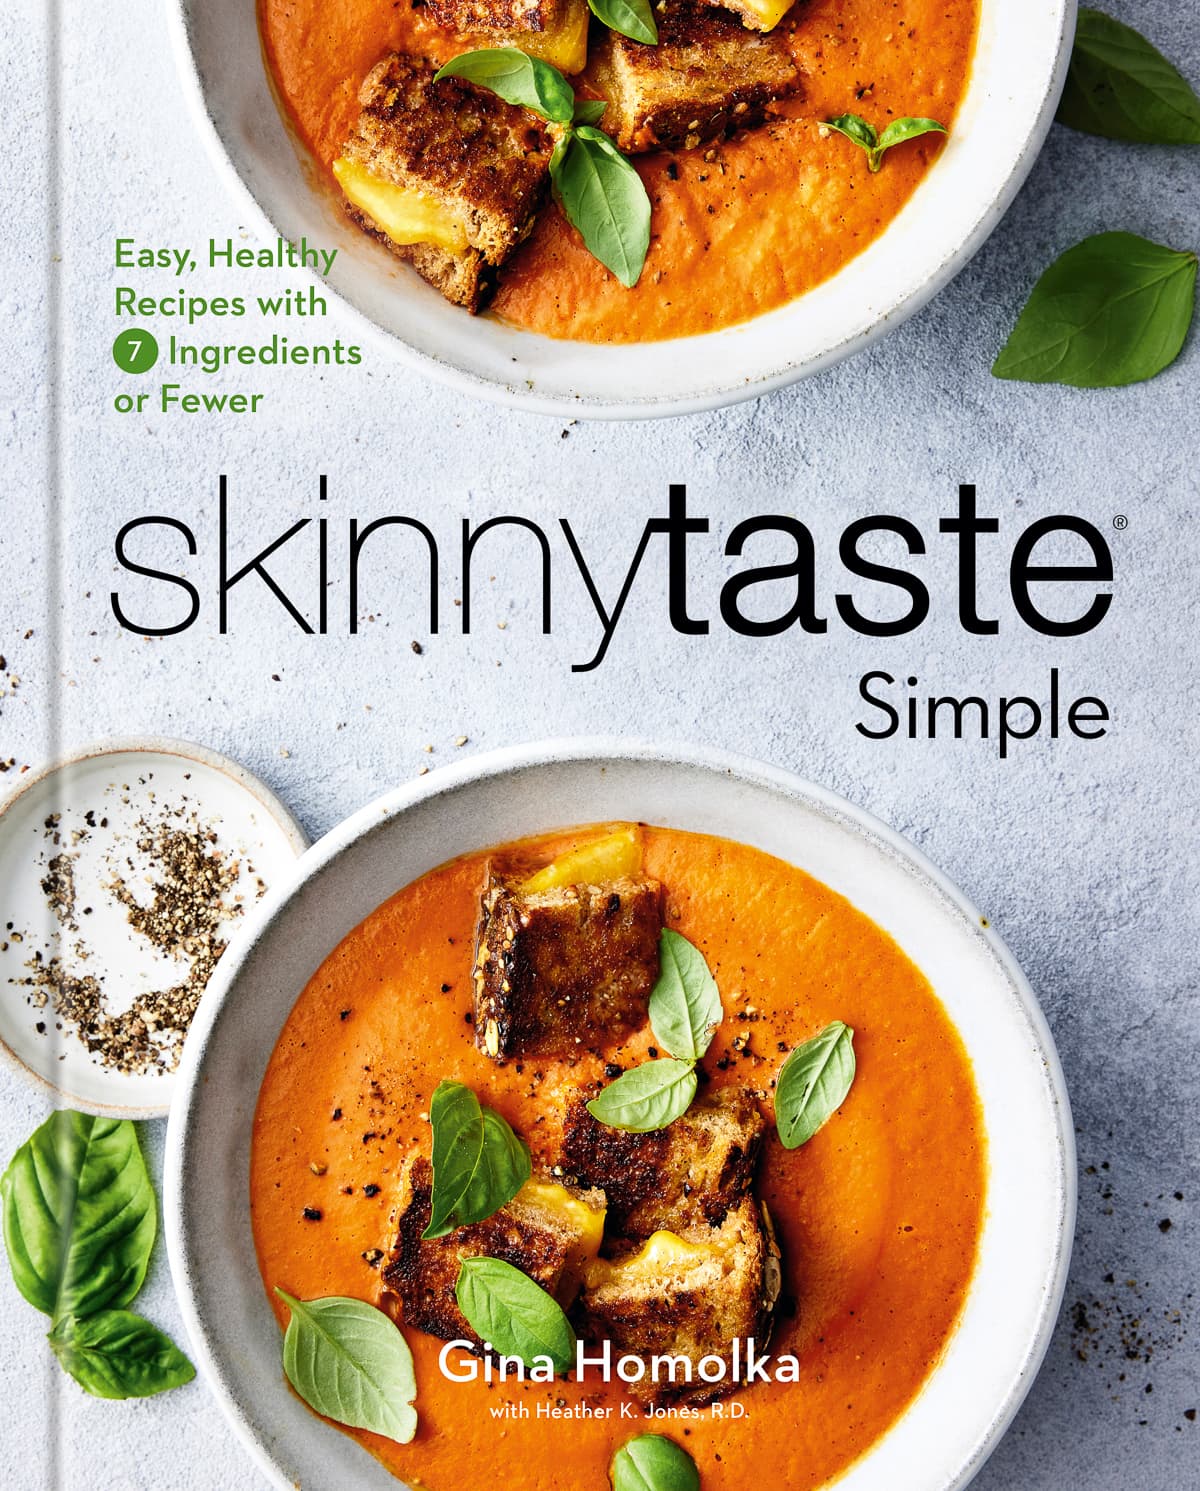 Skinnytaste Simple – Unveiled Cookbook Cover